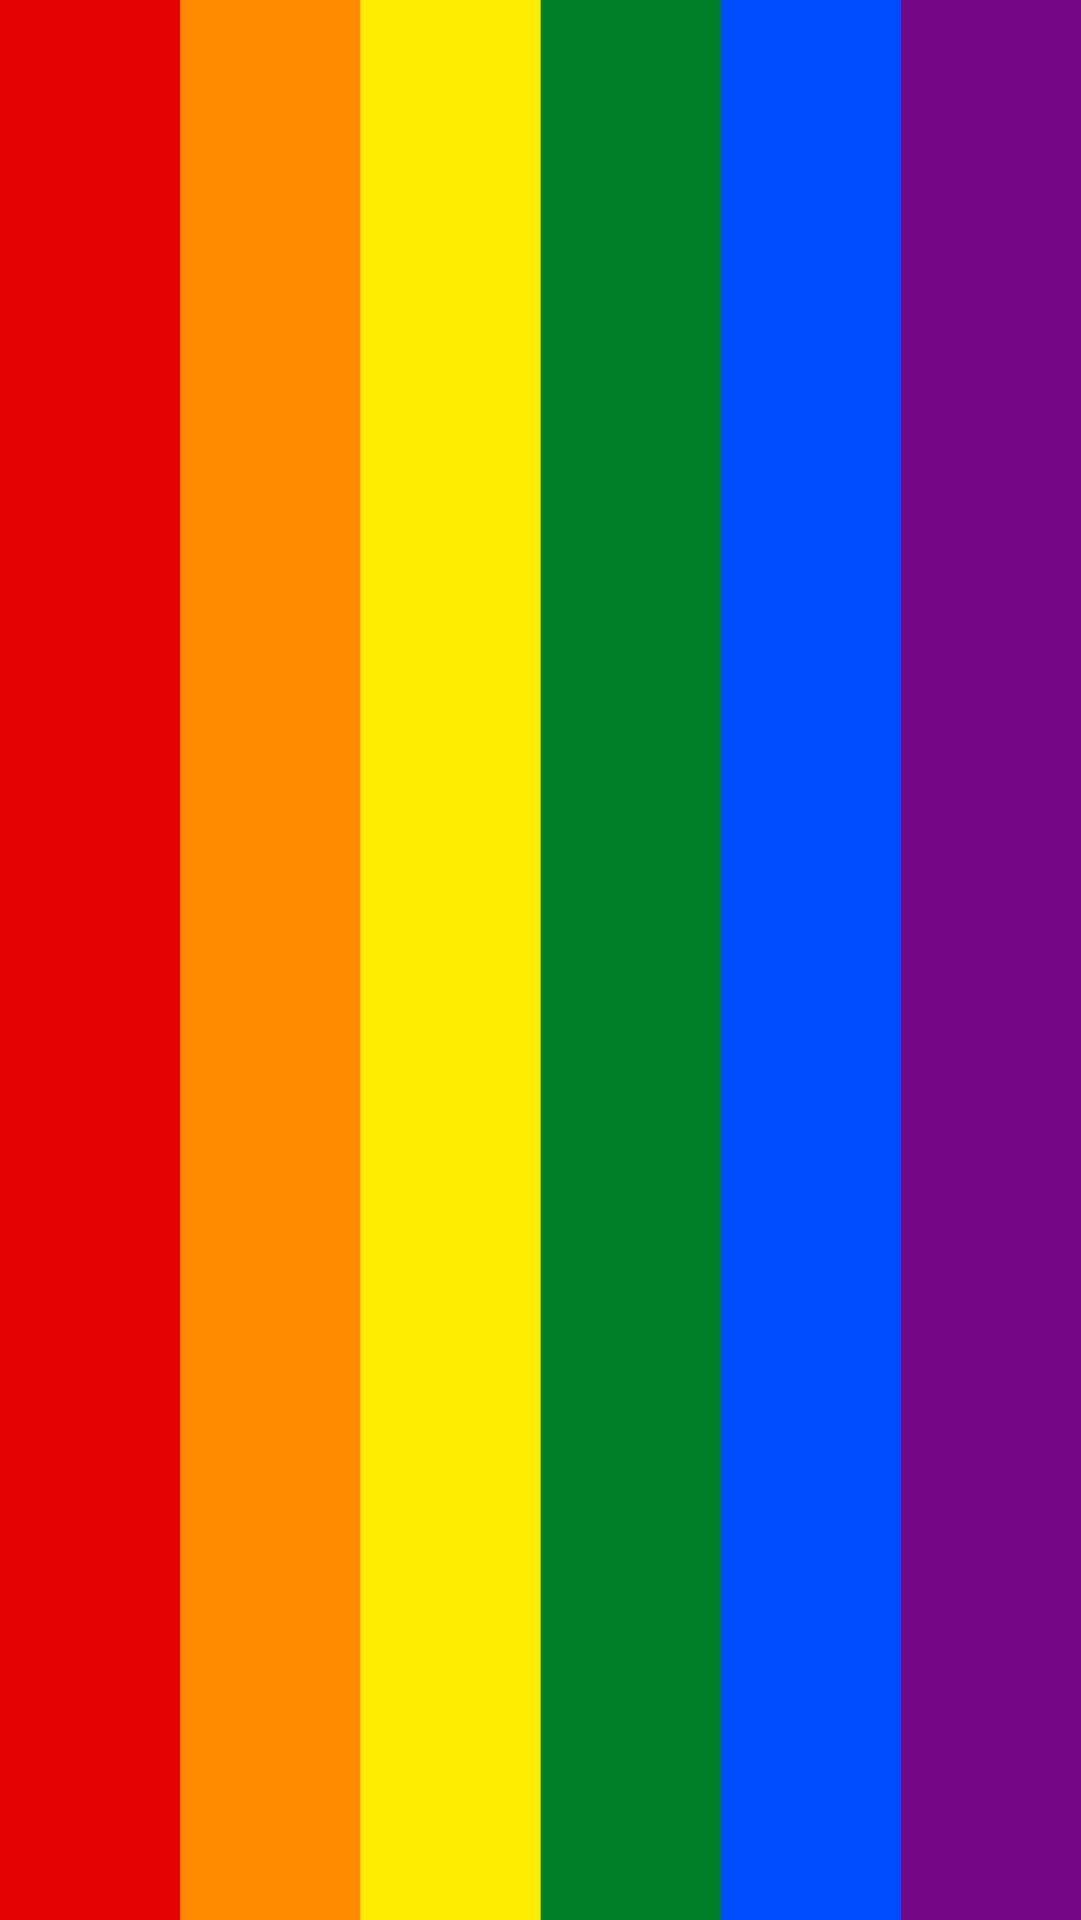 free gay pride images